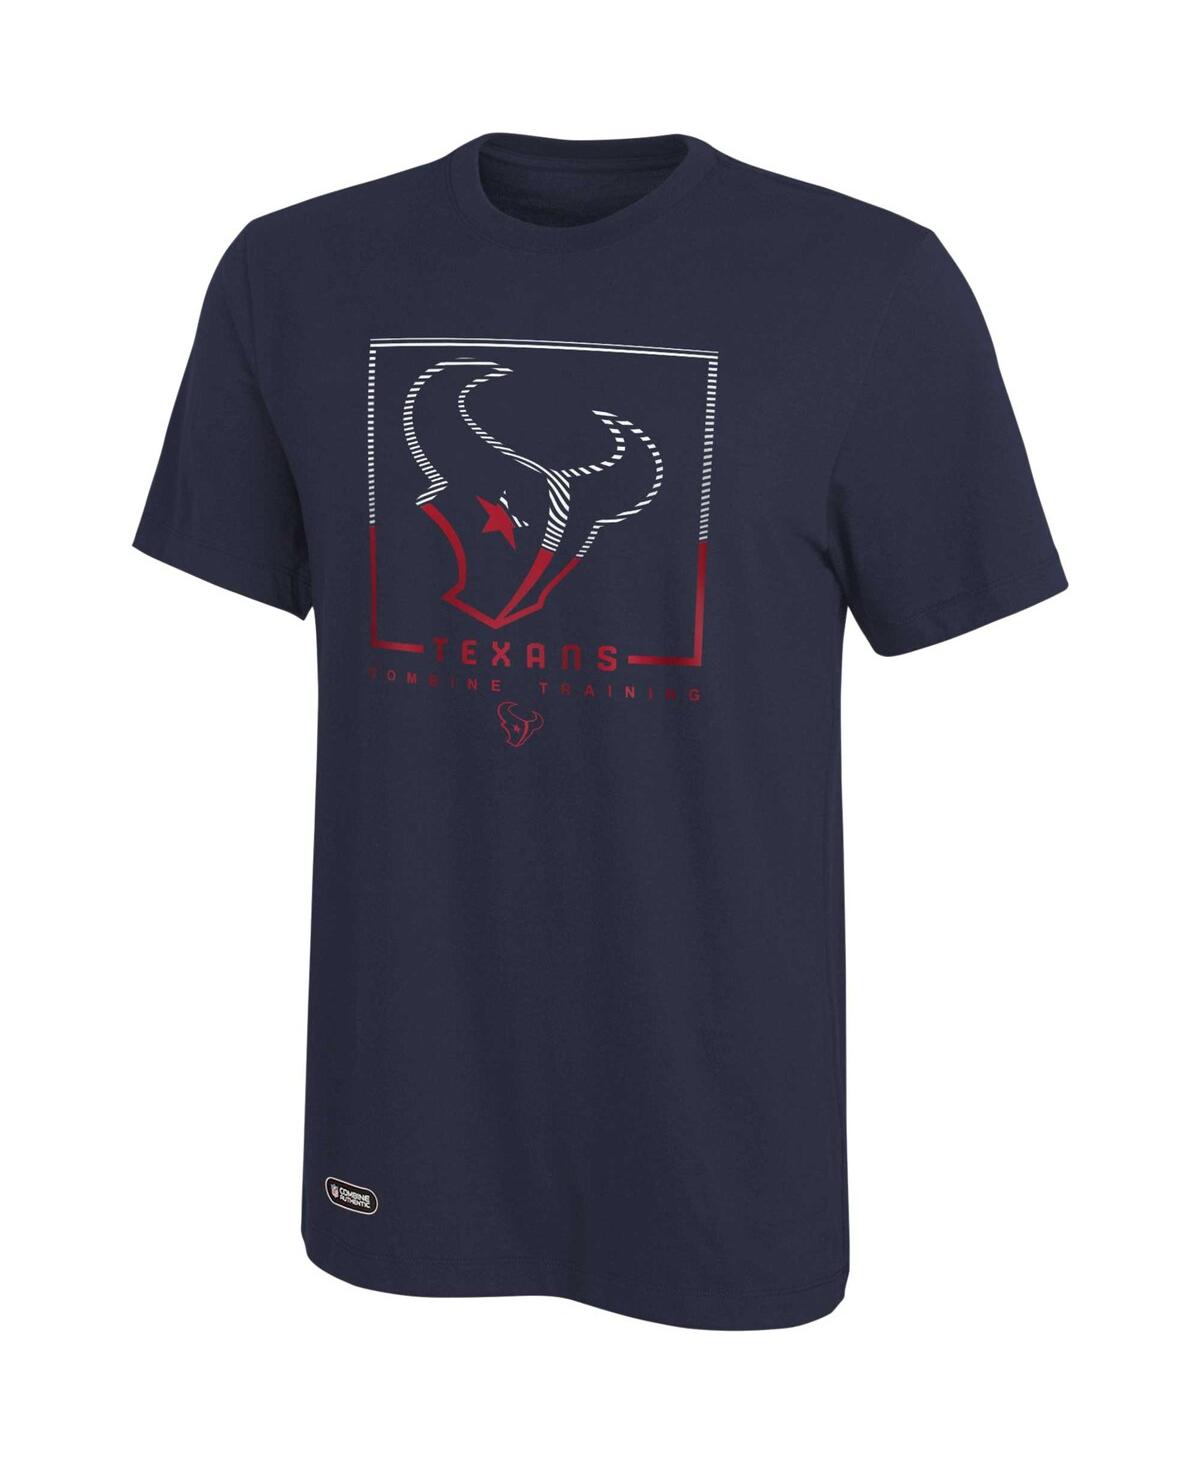 Men's Navy Houston Texans Combine Authentic Clutch T-shirt - Navy